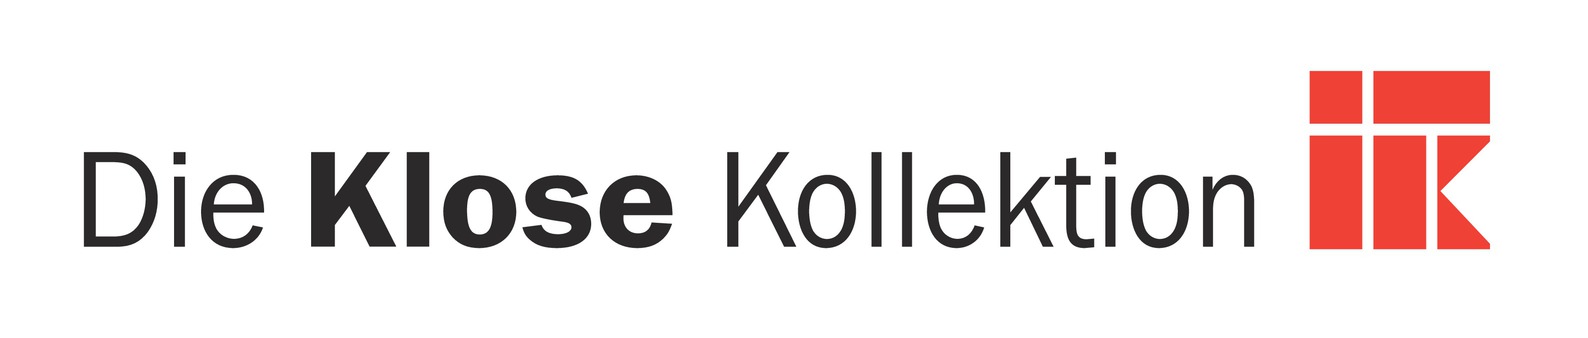 Firmenlogo Klose Kollektion